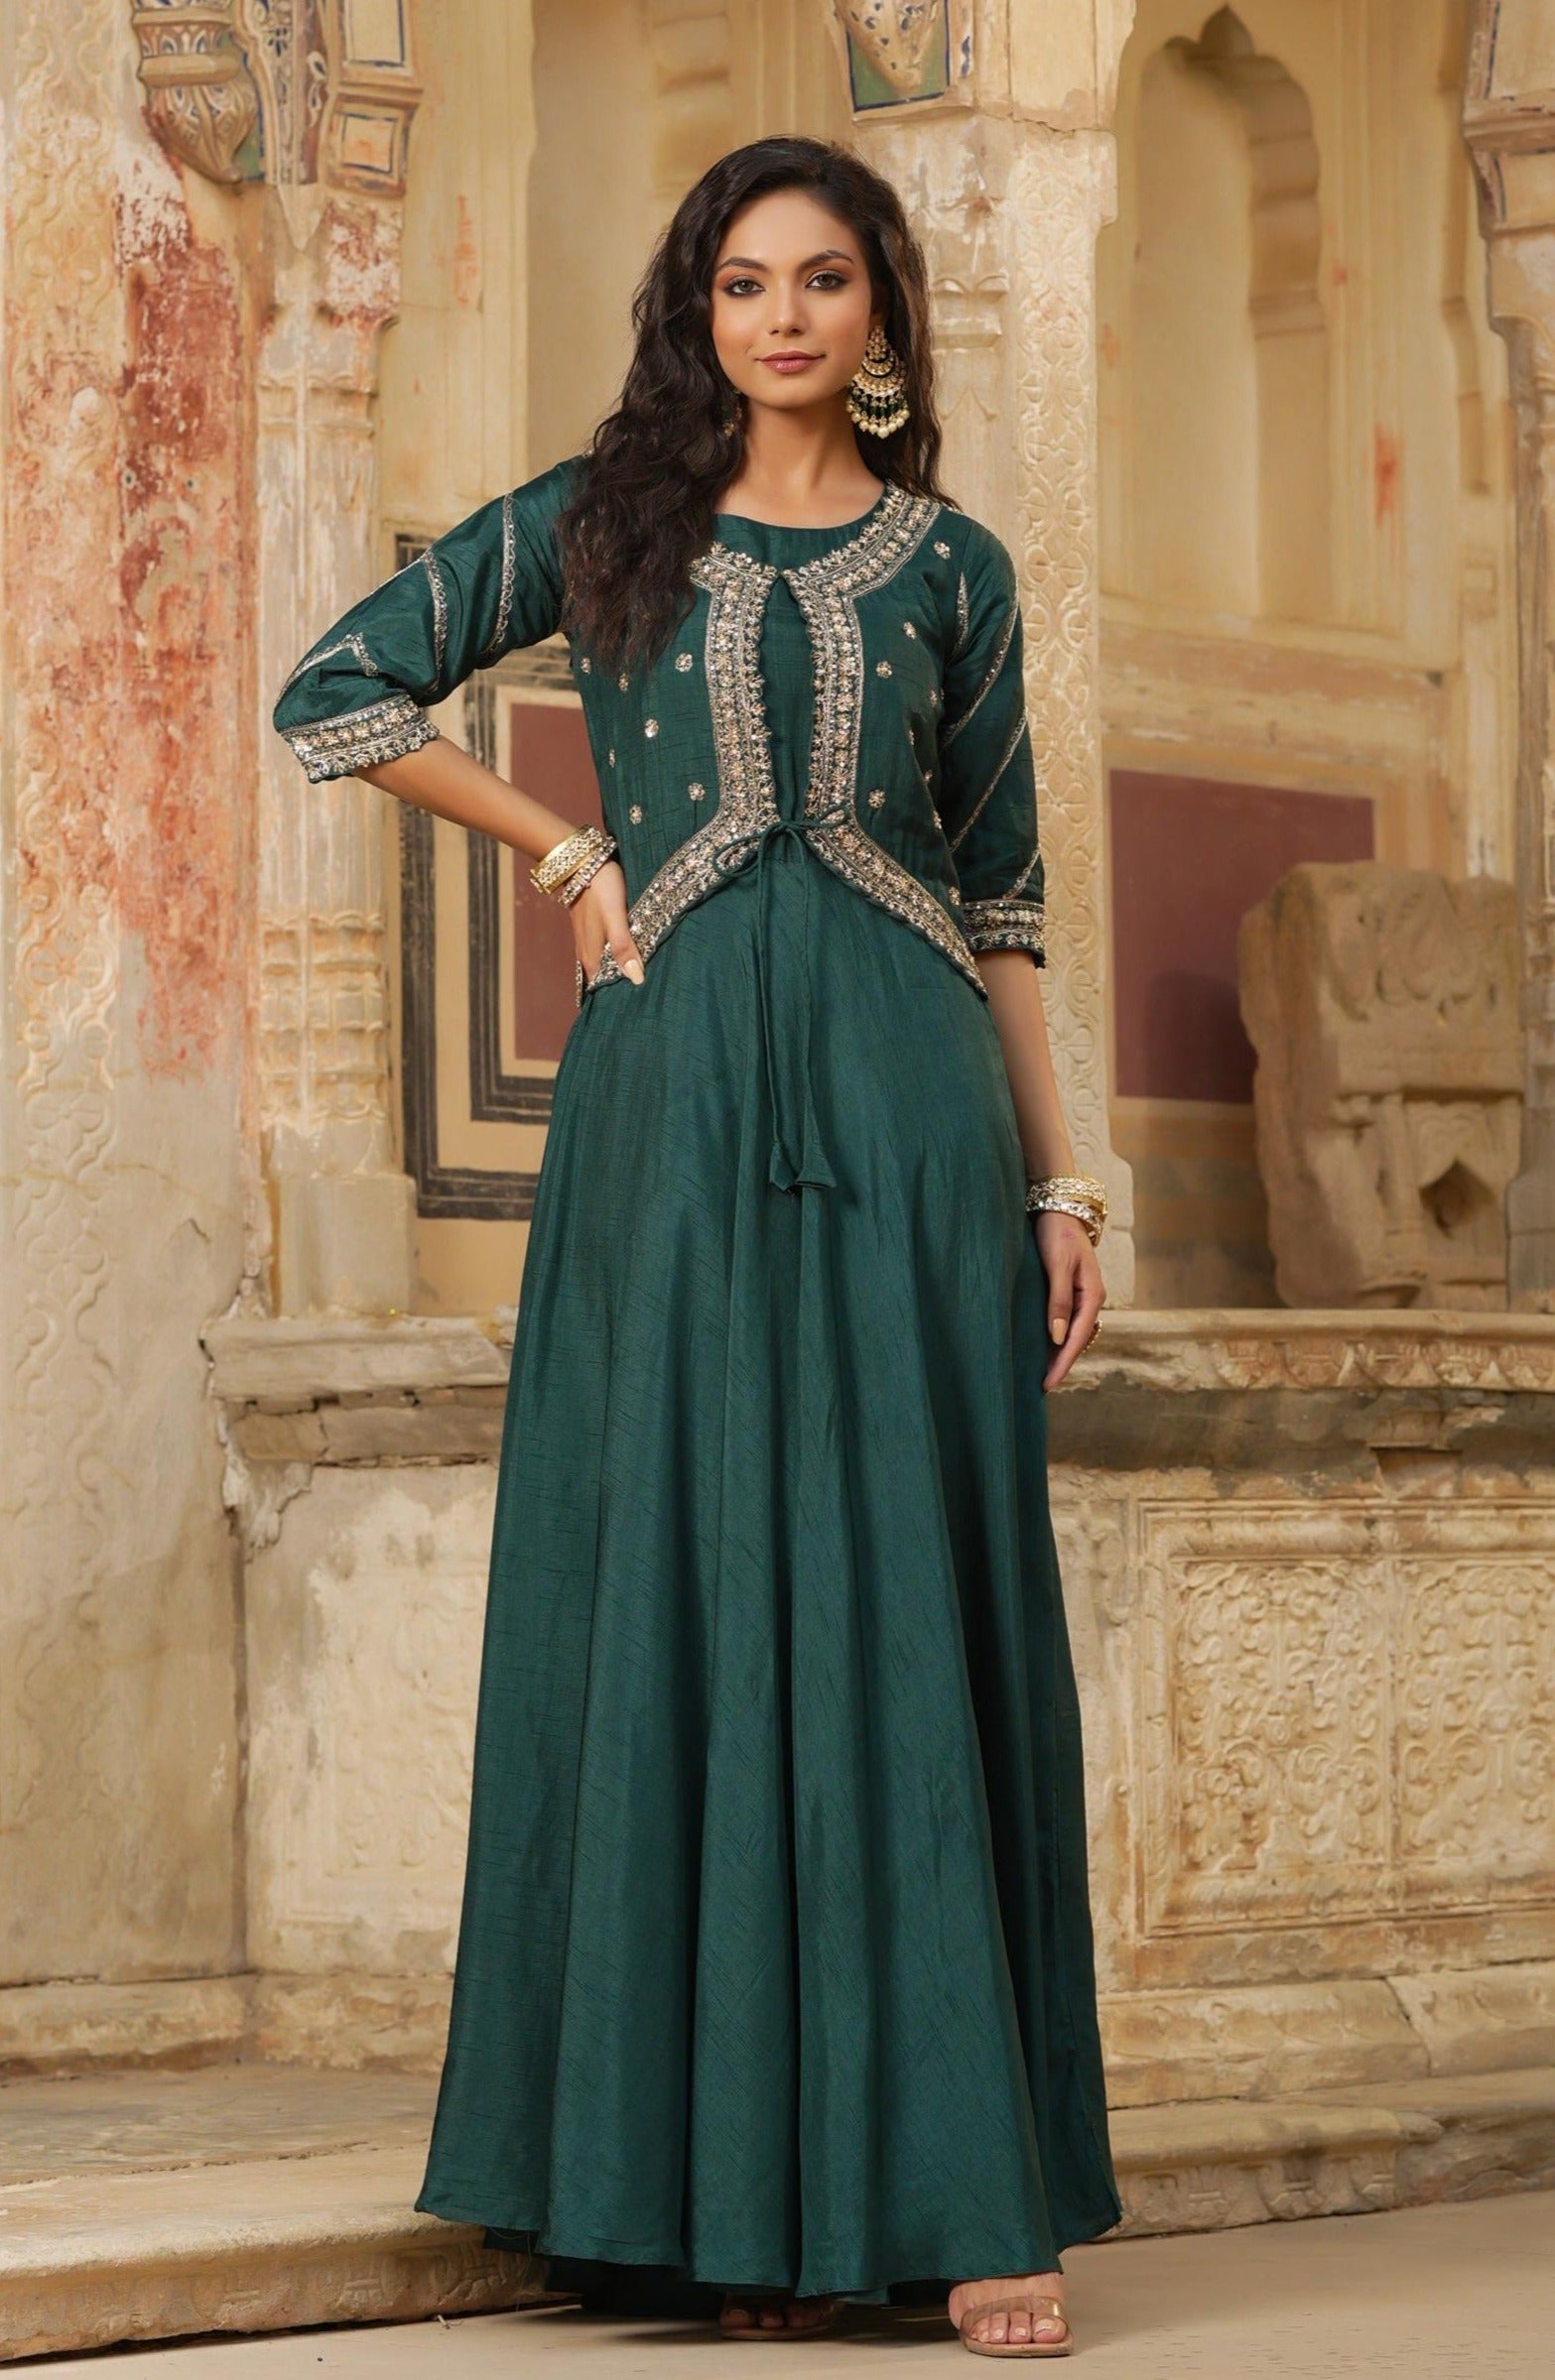 Jadegreen Dola Silk Embellished Ethnic Dress With Jacket